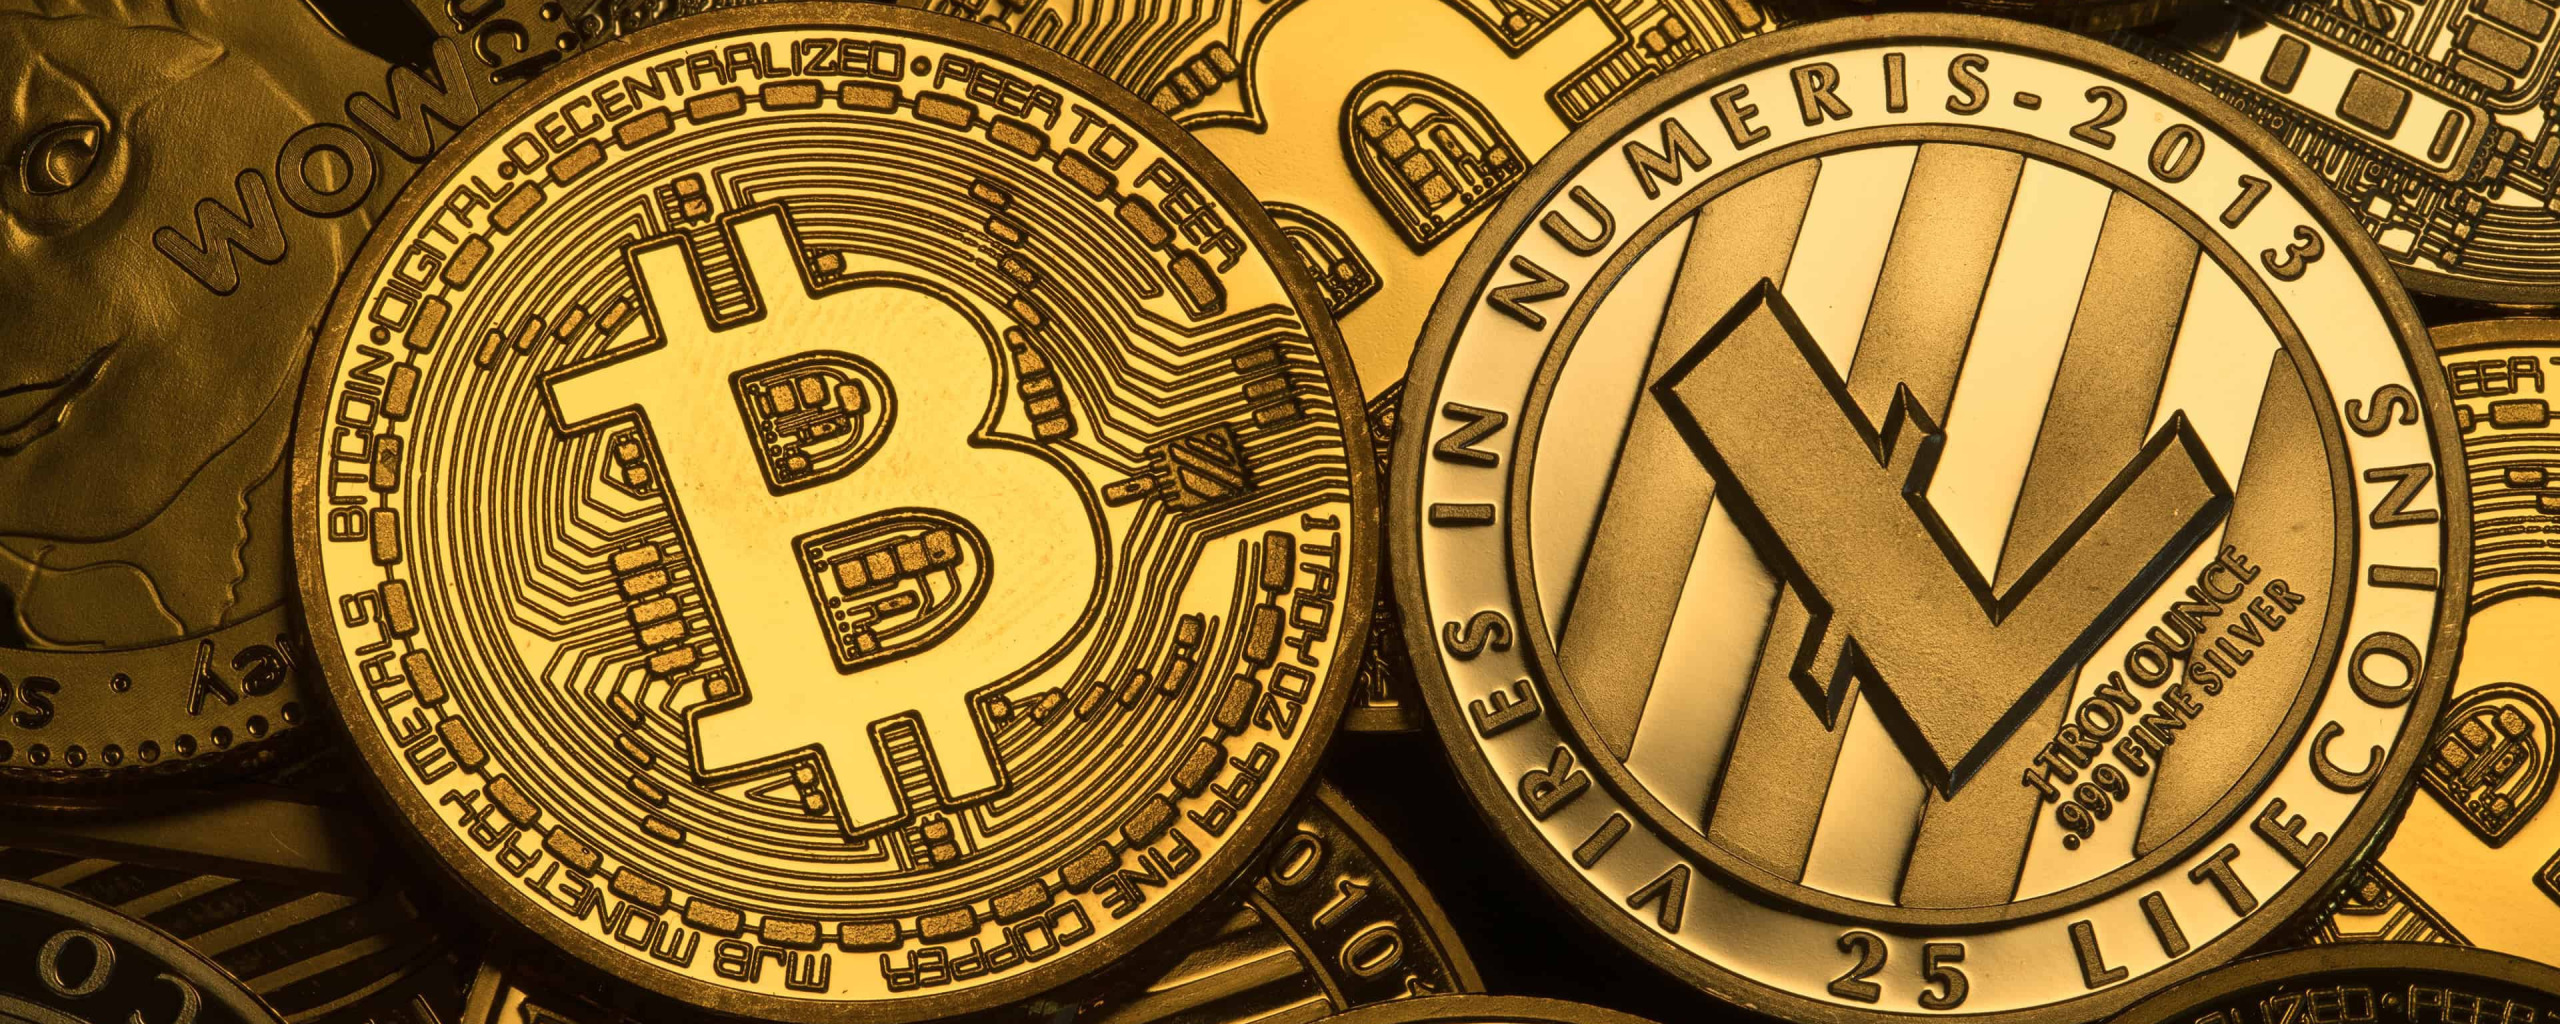 bitcoin litecoin logo